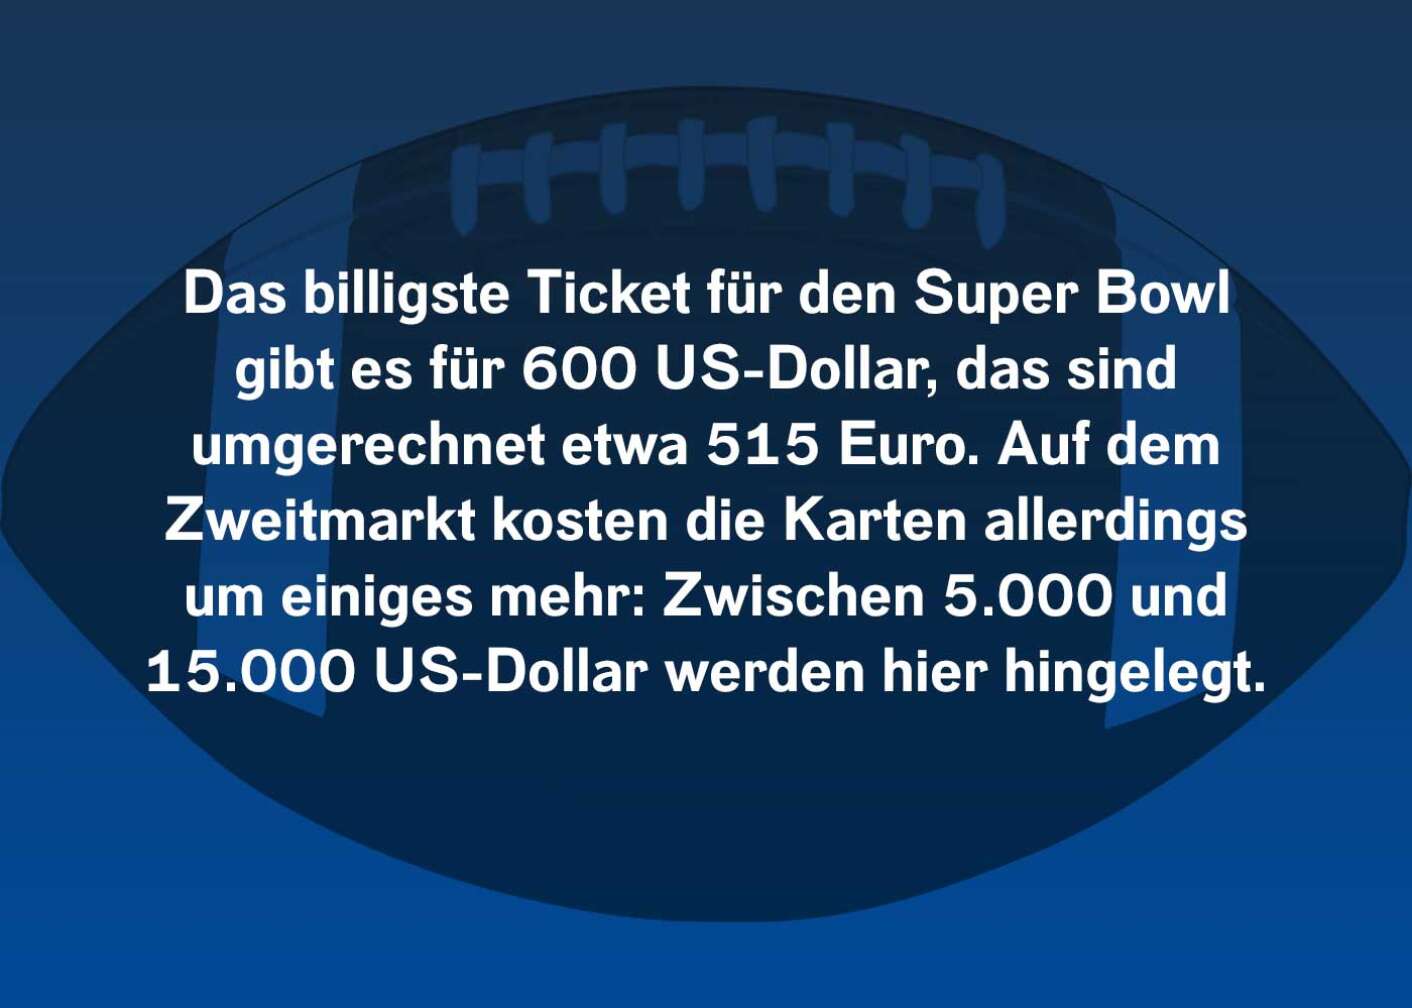 Das billigste Ticket für den Super Bowl gibt es für 600 US-Dollar, das sind umgerechnet etwa 515 Euro. Auf dem Zweitmarkt kosten die Karten allerdings um einiges mehr: Zwischen 5.000 und 15.000 US-Dollar werden hier hingelegt.